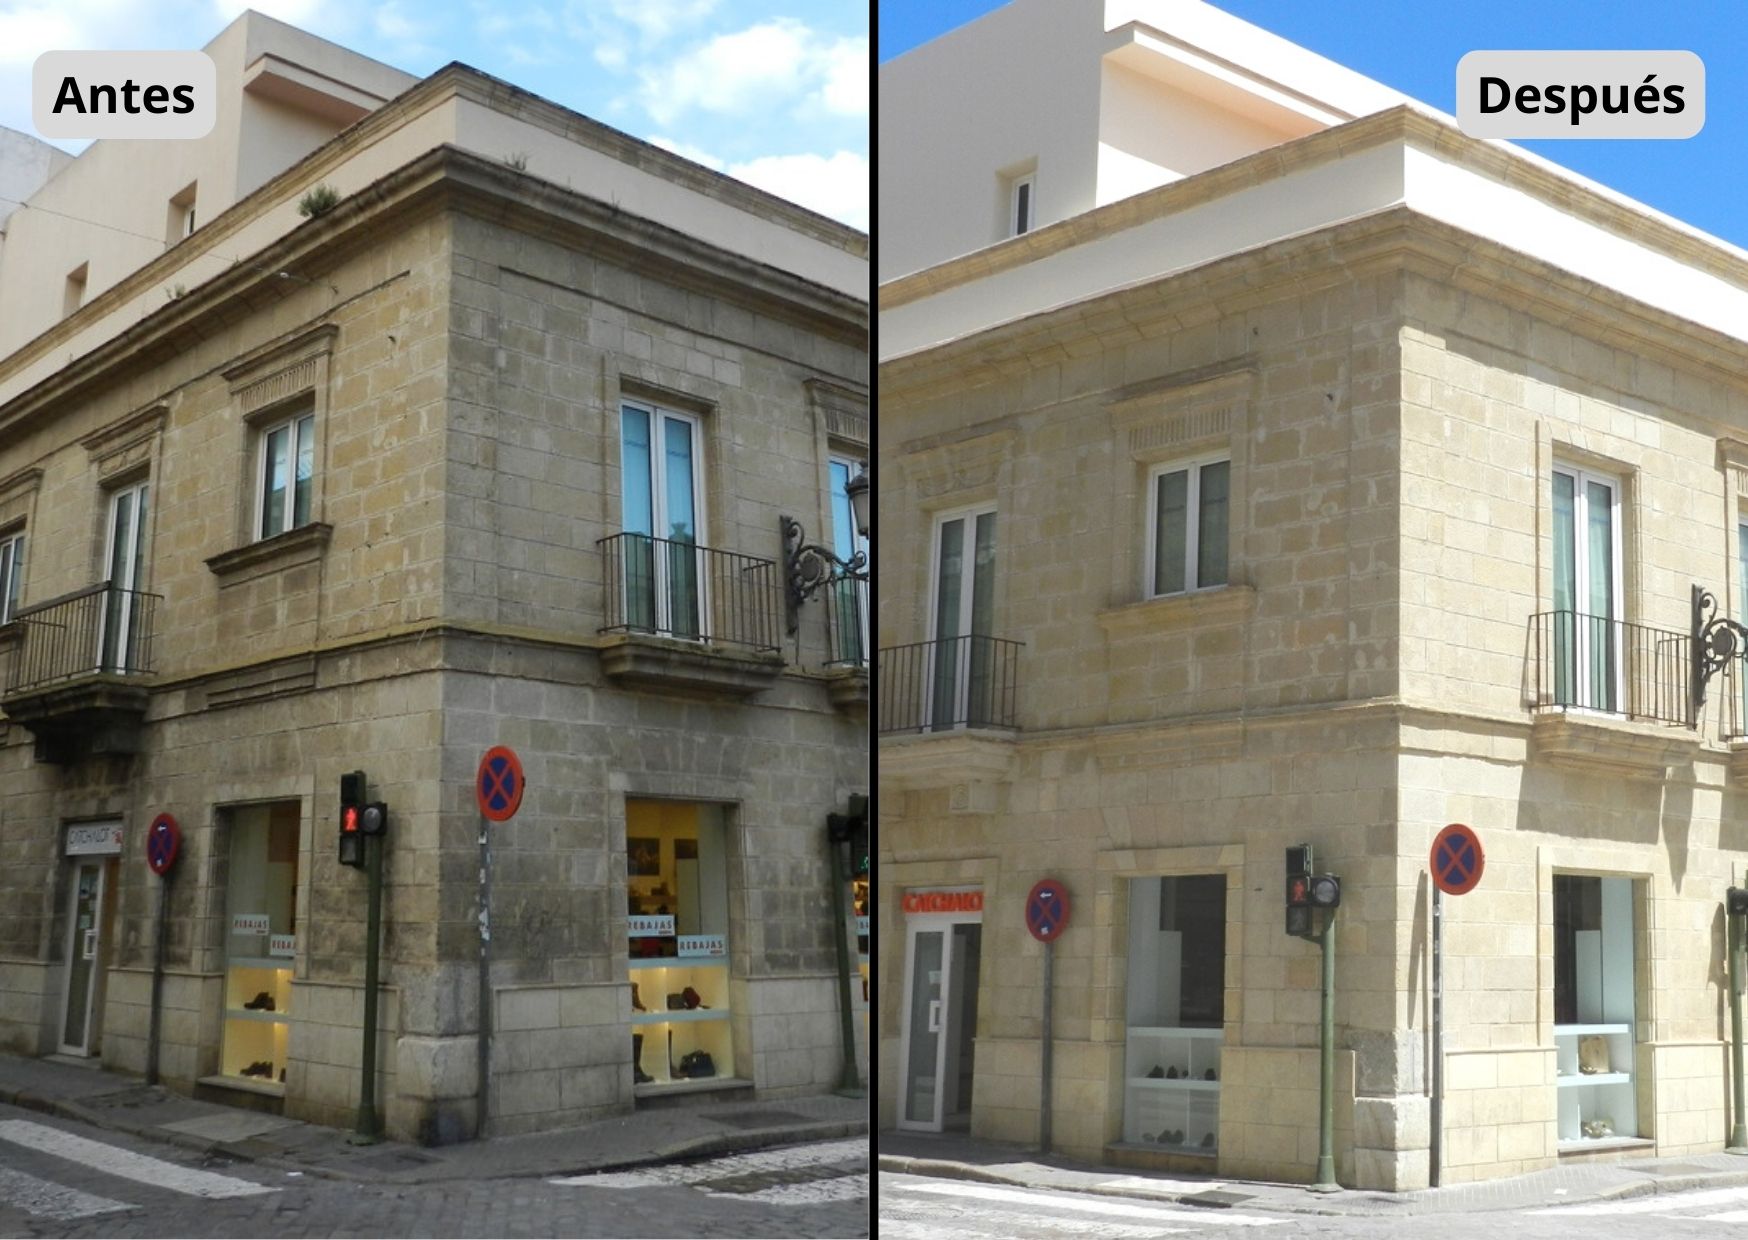 Edificio antiguo rehabilitado antes y despues